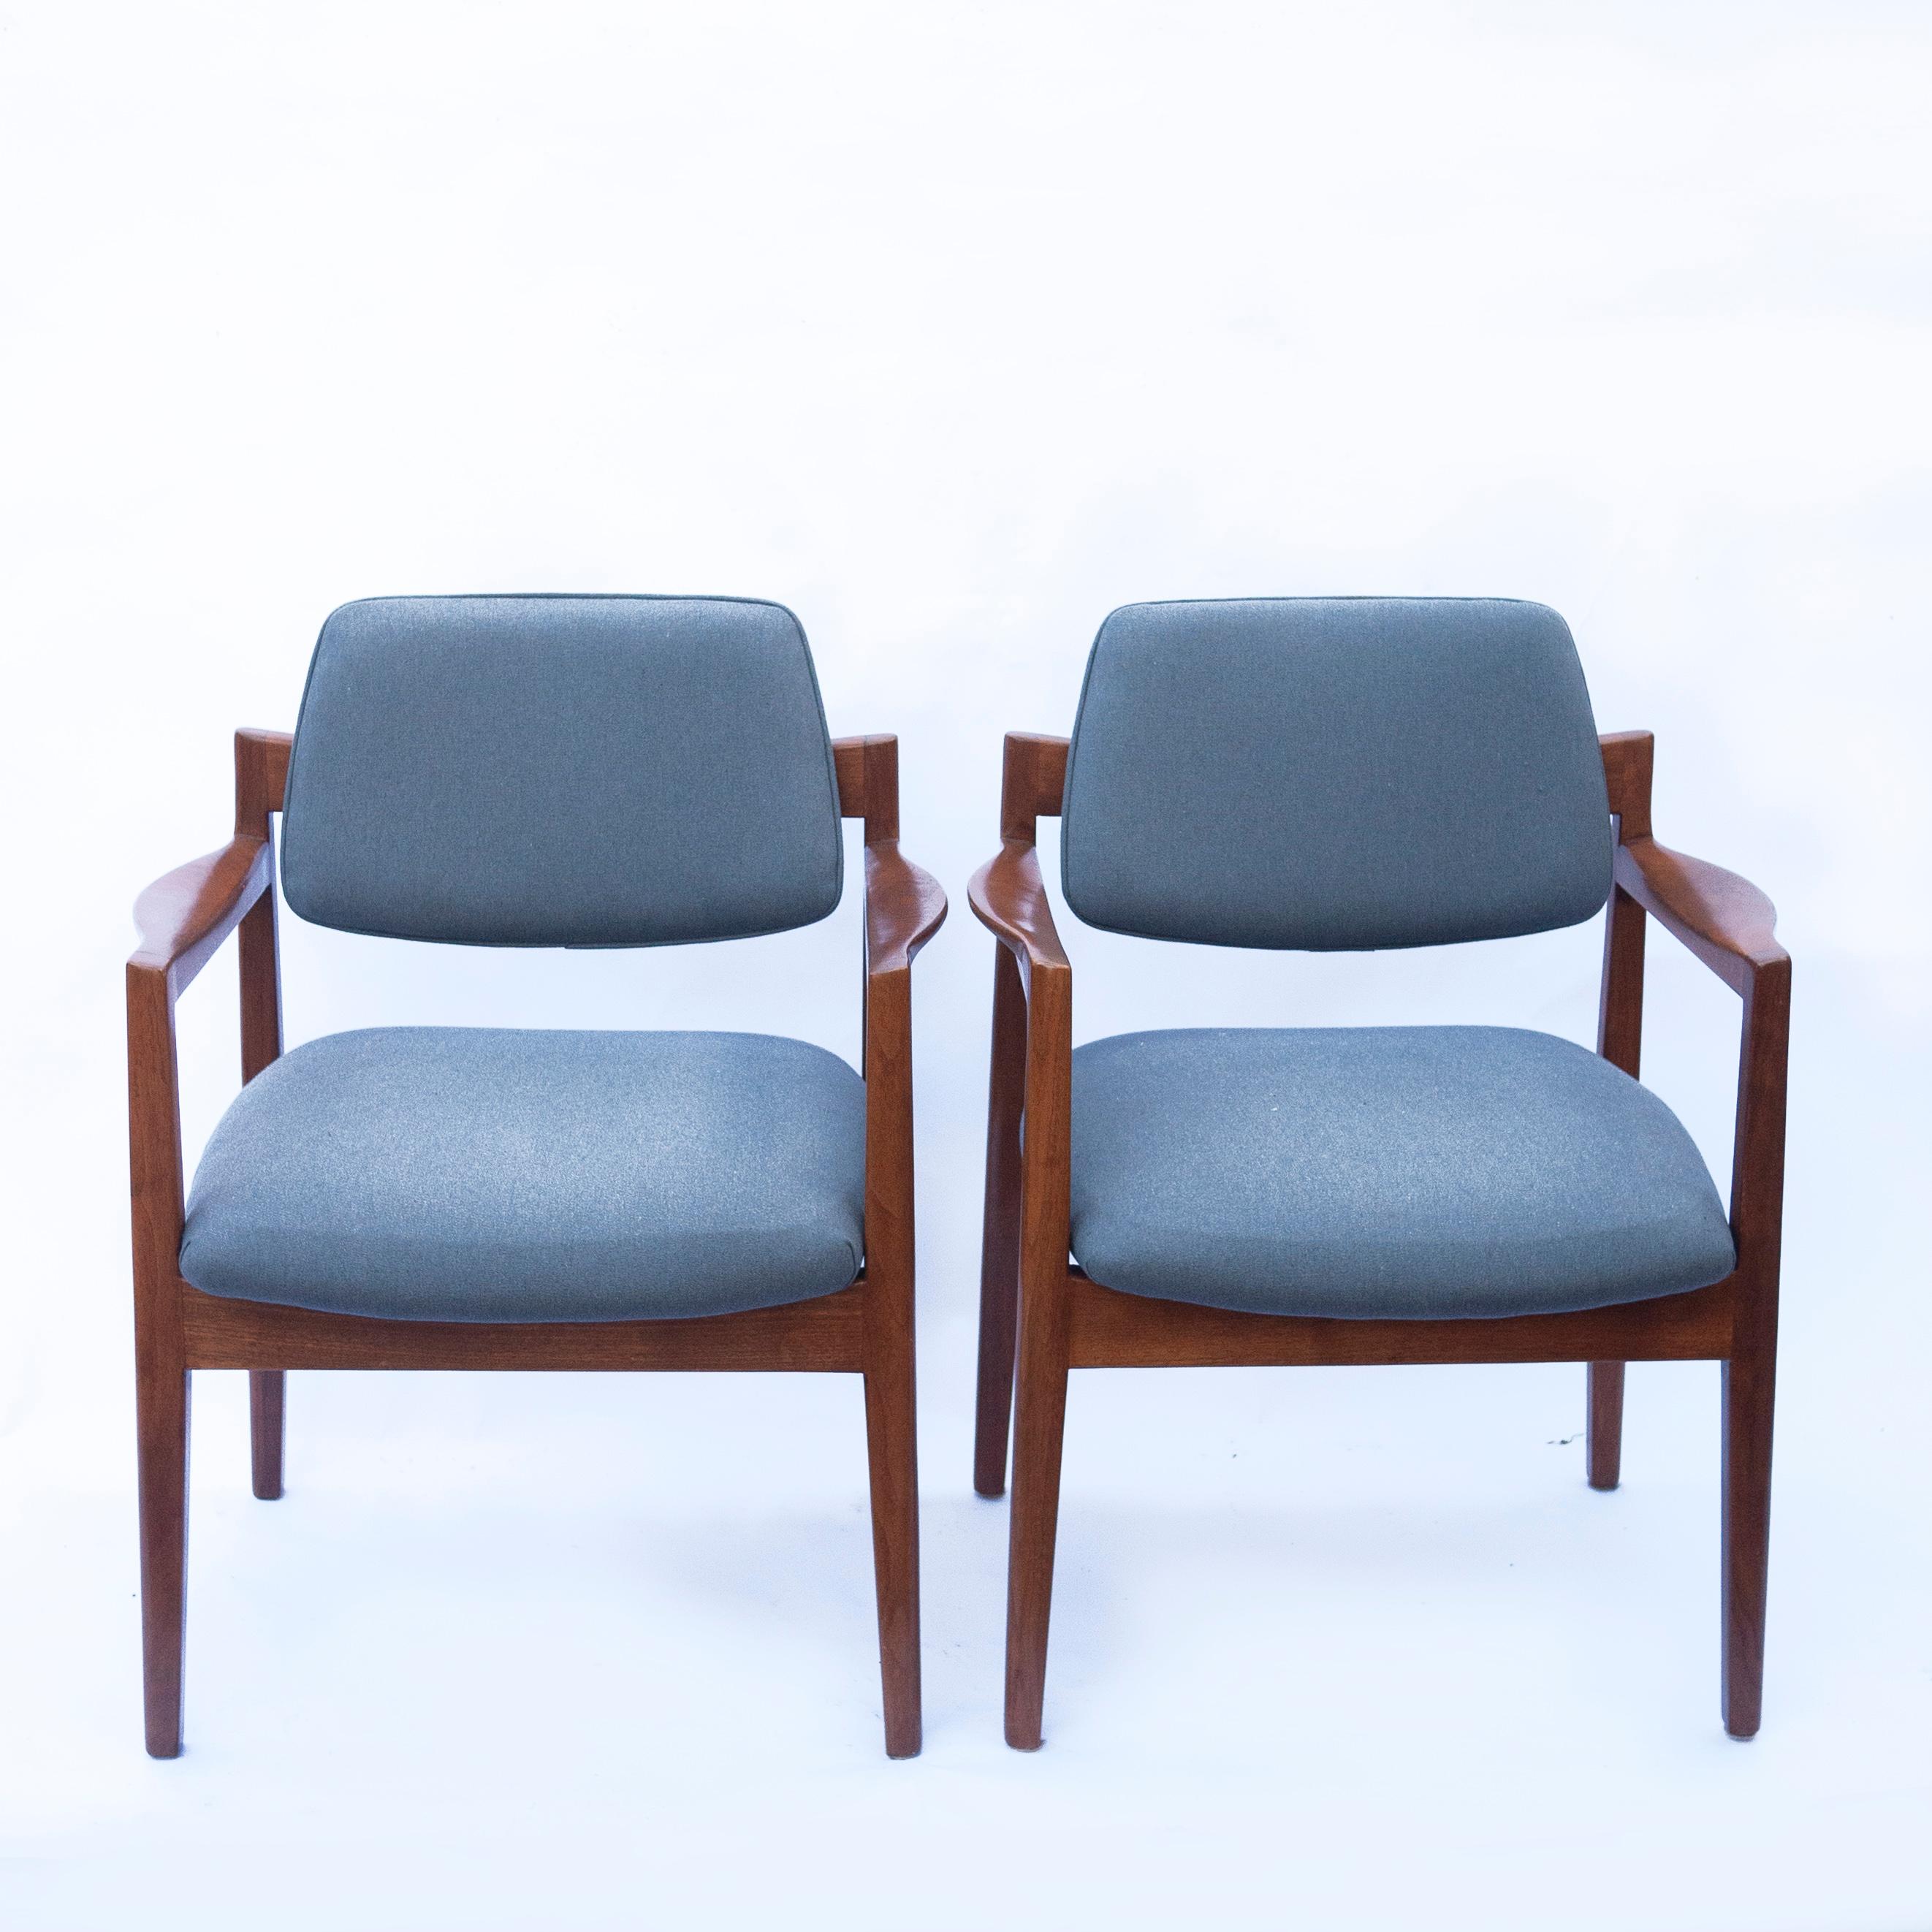 Ein Paar Jens Risom Sessel in einem neu gepolsterten blauen Stoff. Der Rahmen ist aus Nussbaumholz gefertigt.

Hersteller - Knoll

Designer - Jens Risom

Gestaltungszeitraum - 1960 bis 1969

Stil - Vintage, Mitte des